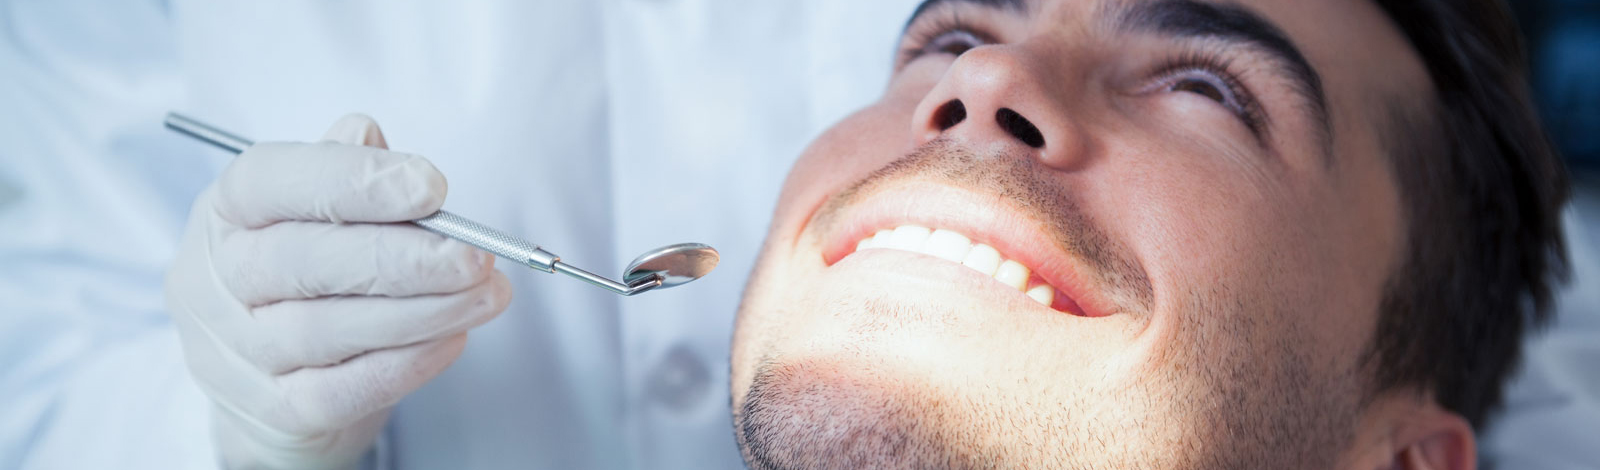 Chirurgie dentaire et extraction des dents de sagesse